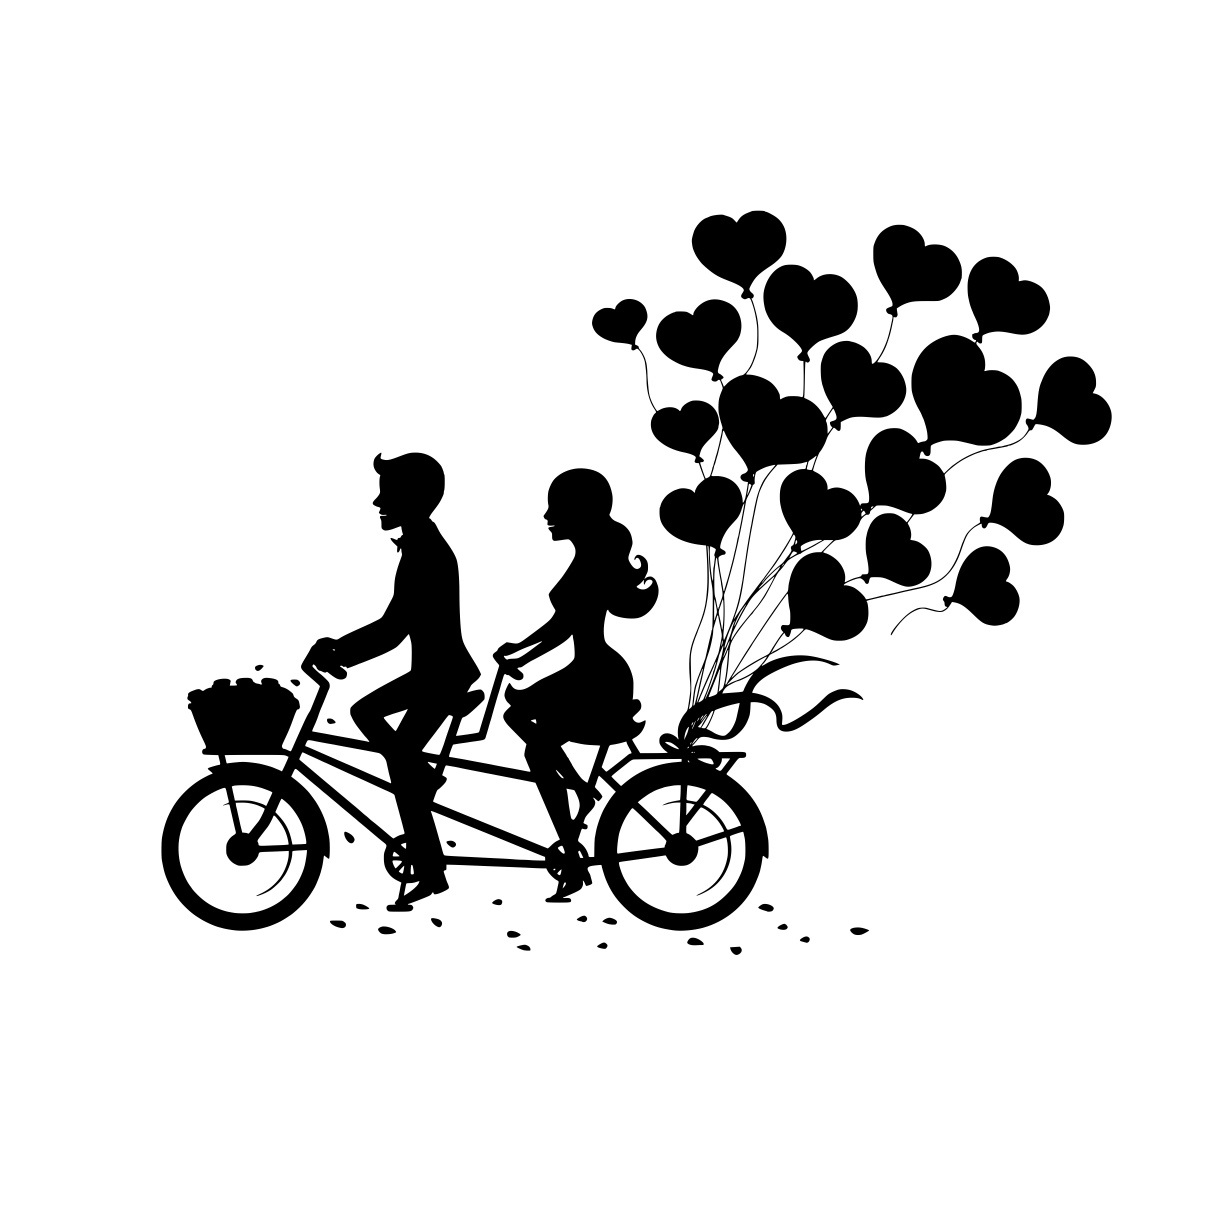 نقش بالليزر لزوجين رومانسيين على الدراجة الترادفية